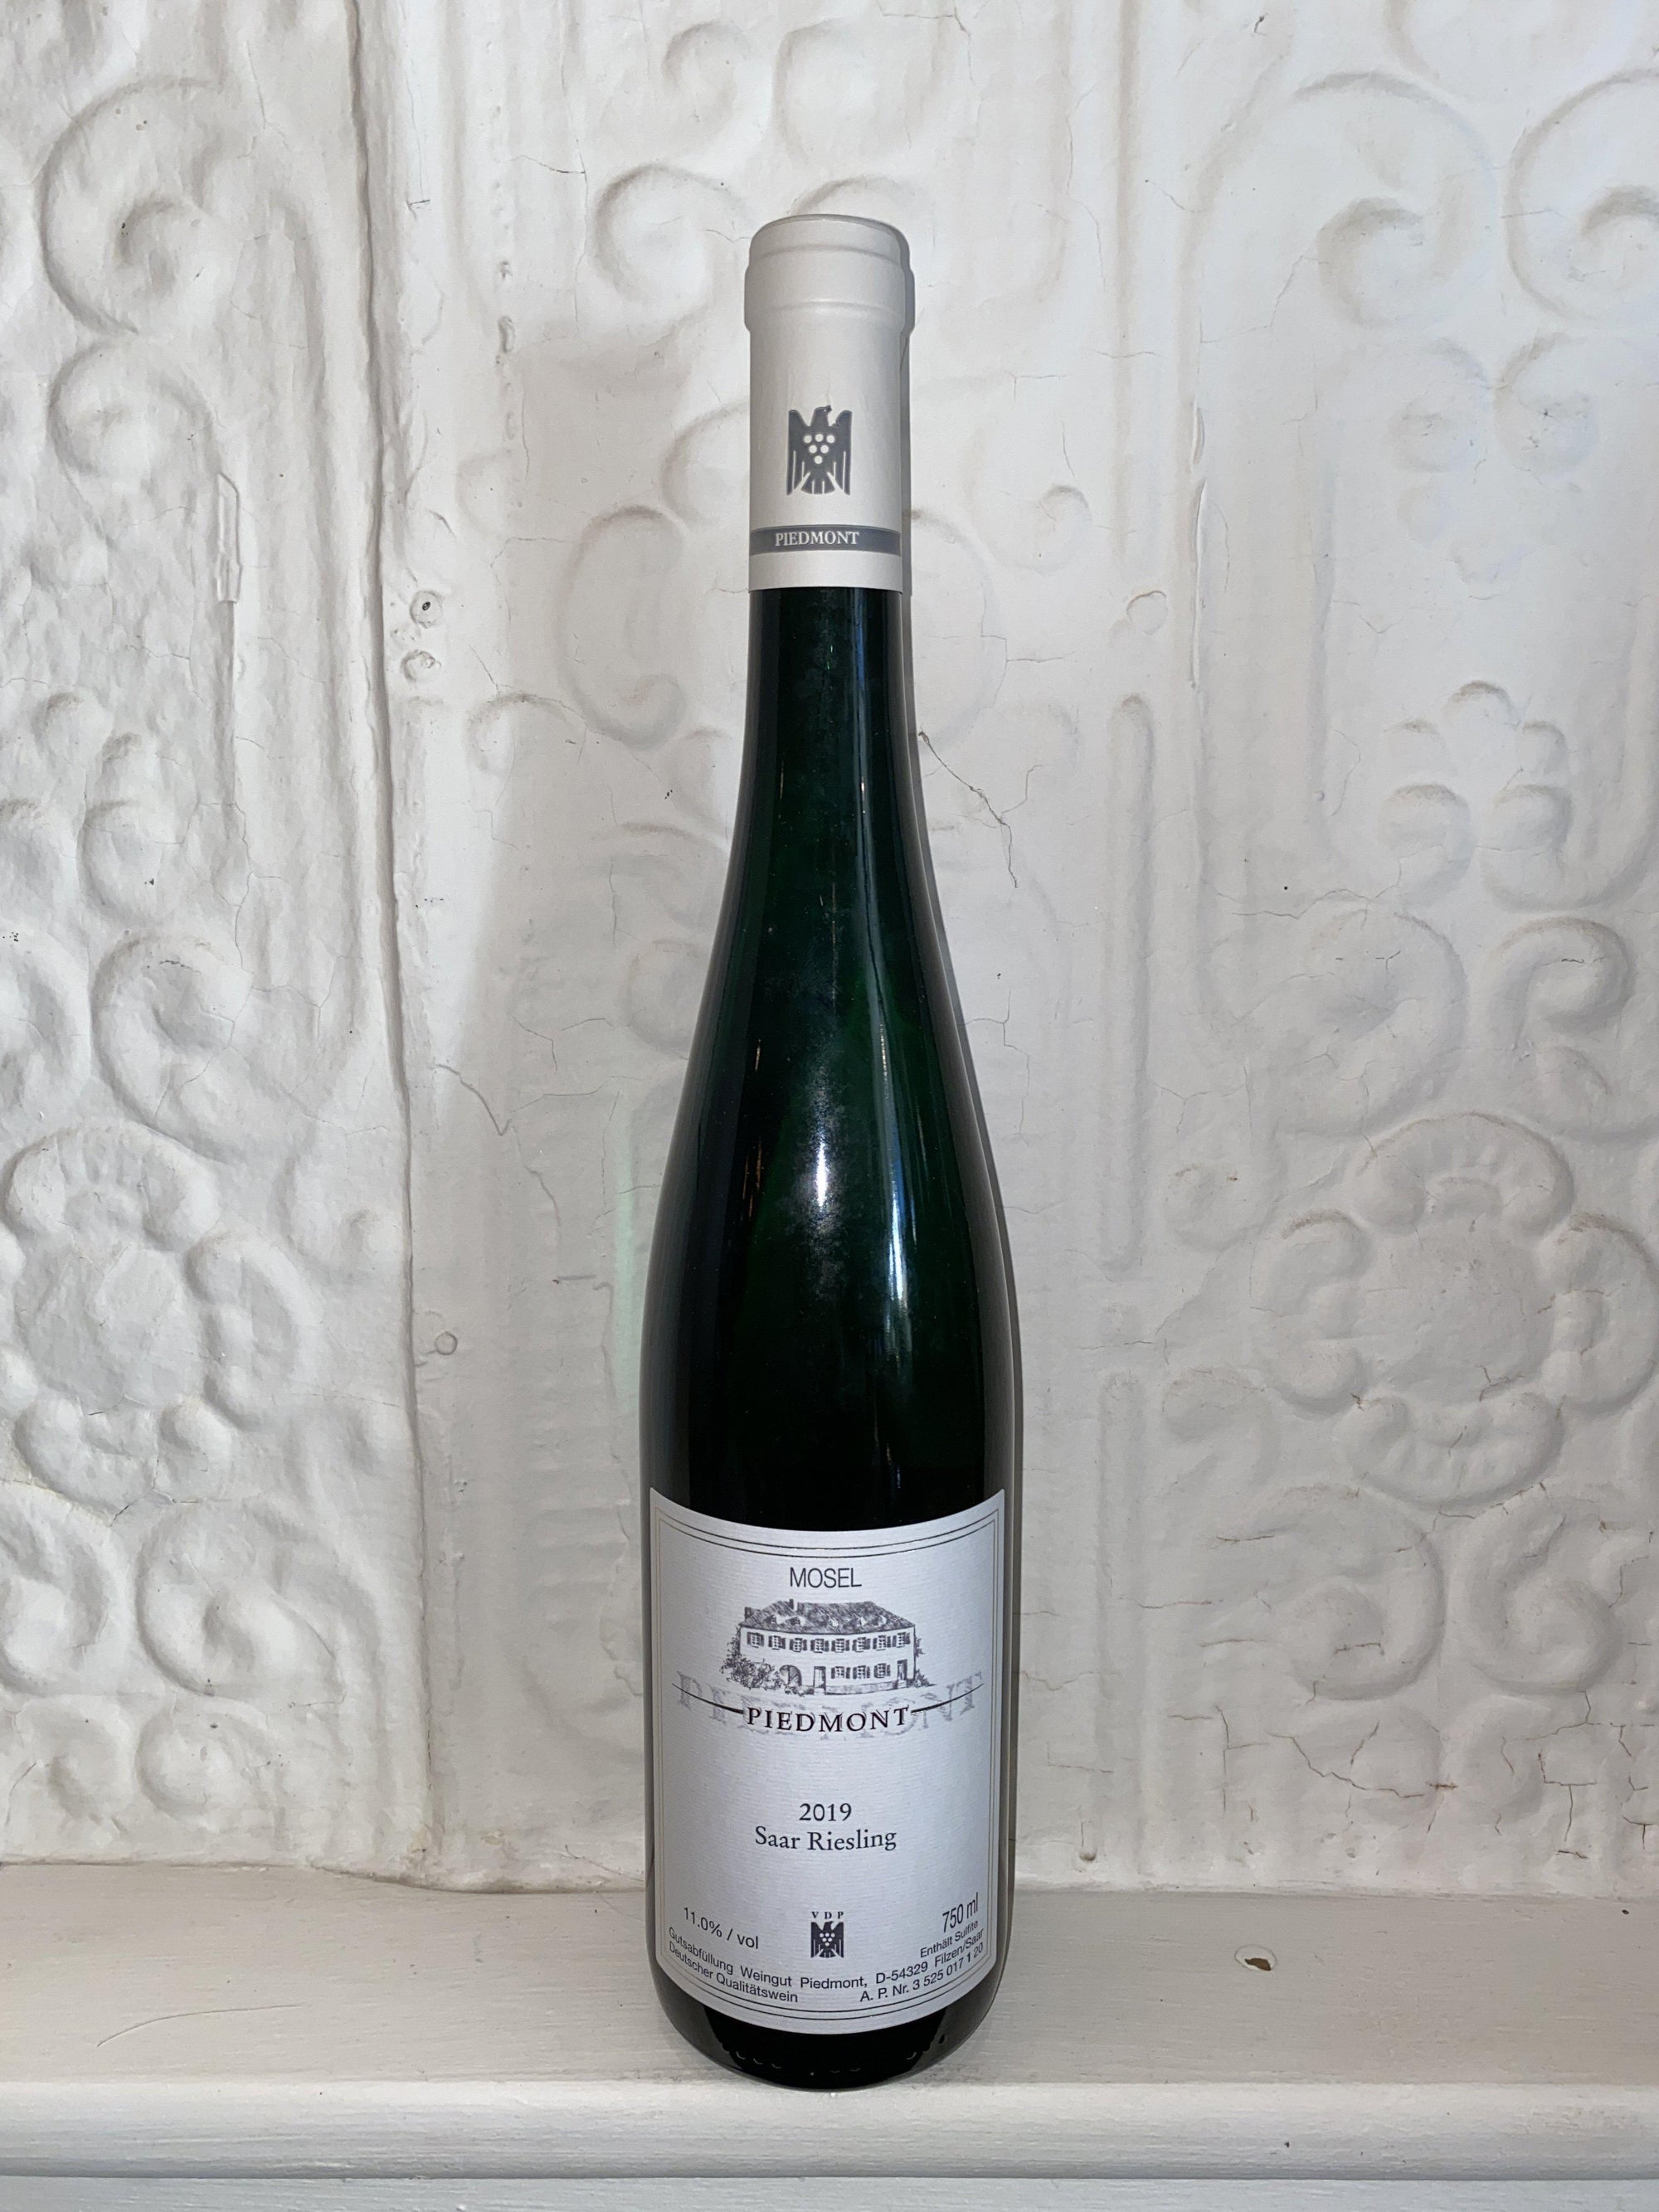 Saar Riesling Trocken, Weingut Piedmont 2019 (Mosel, Germany)-Wine-Bibber & Bell